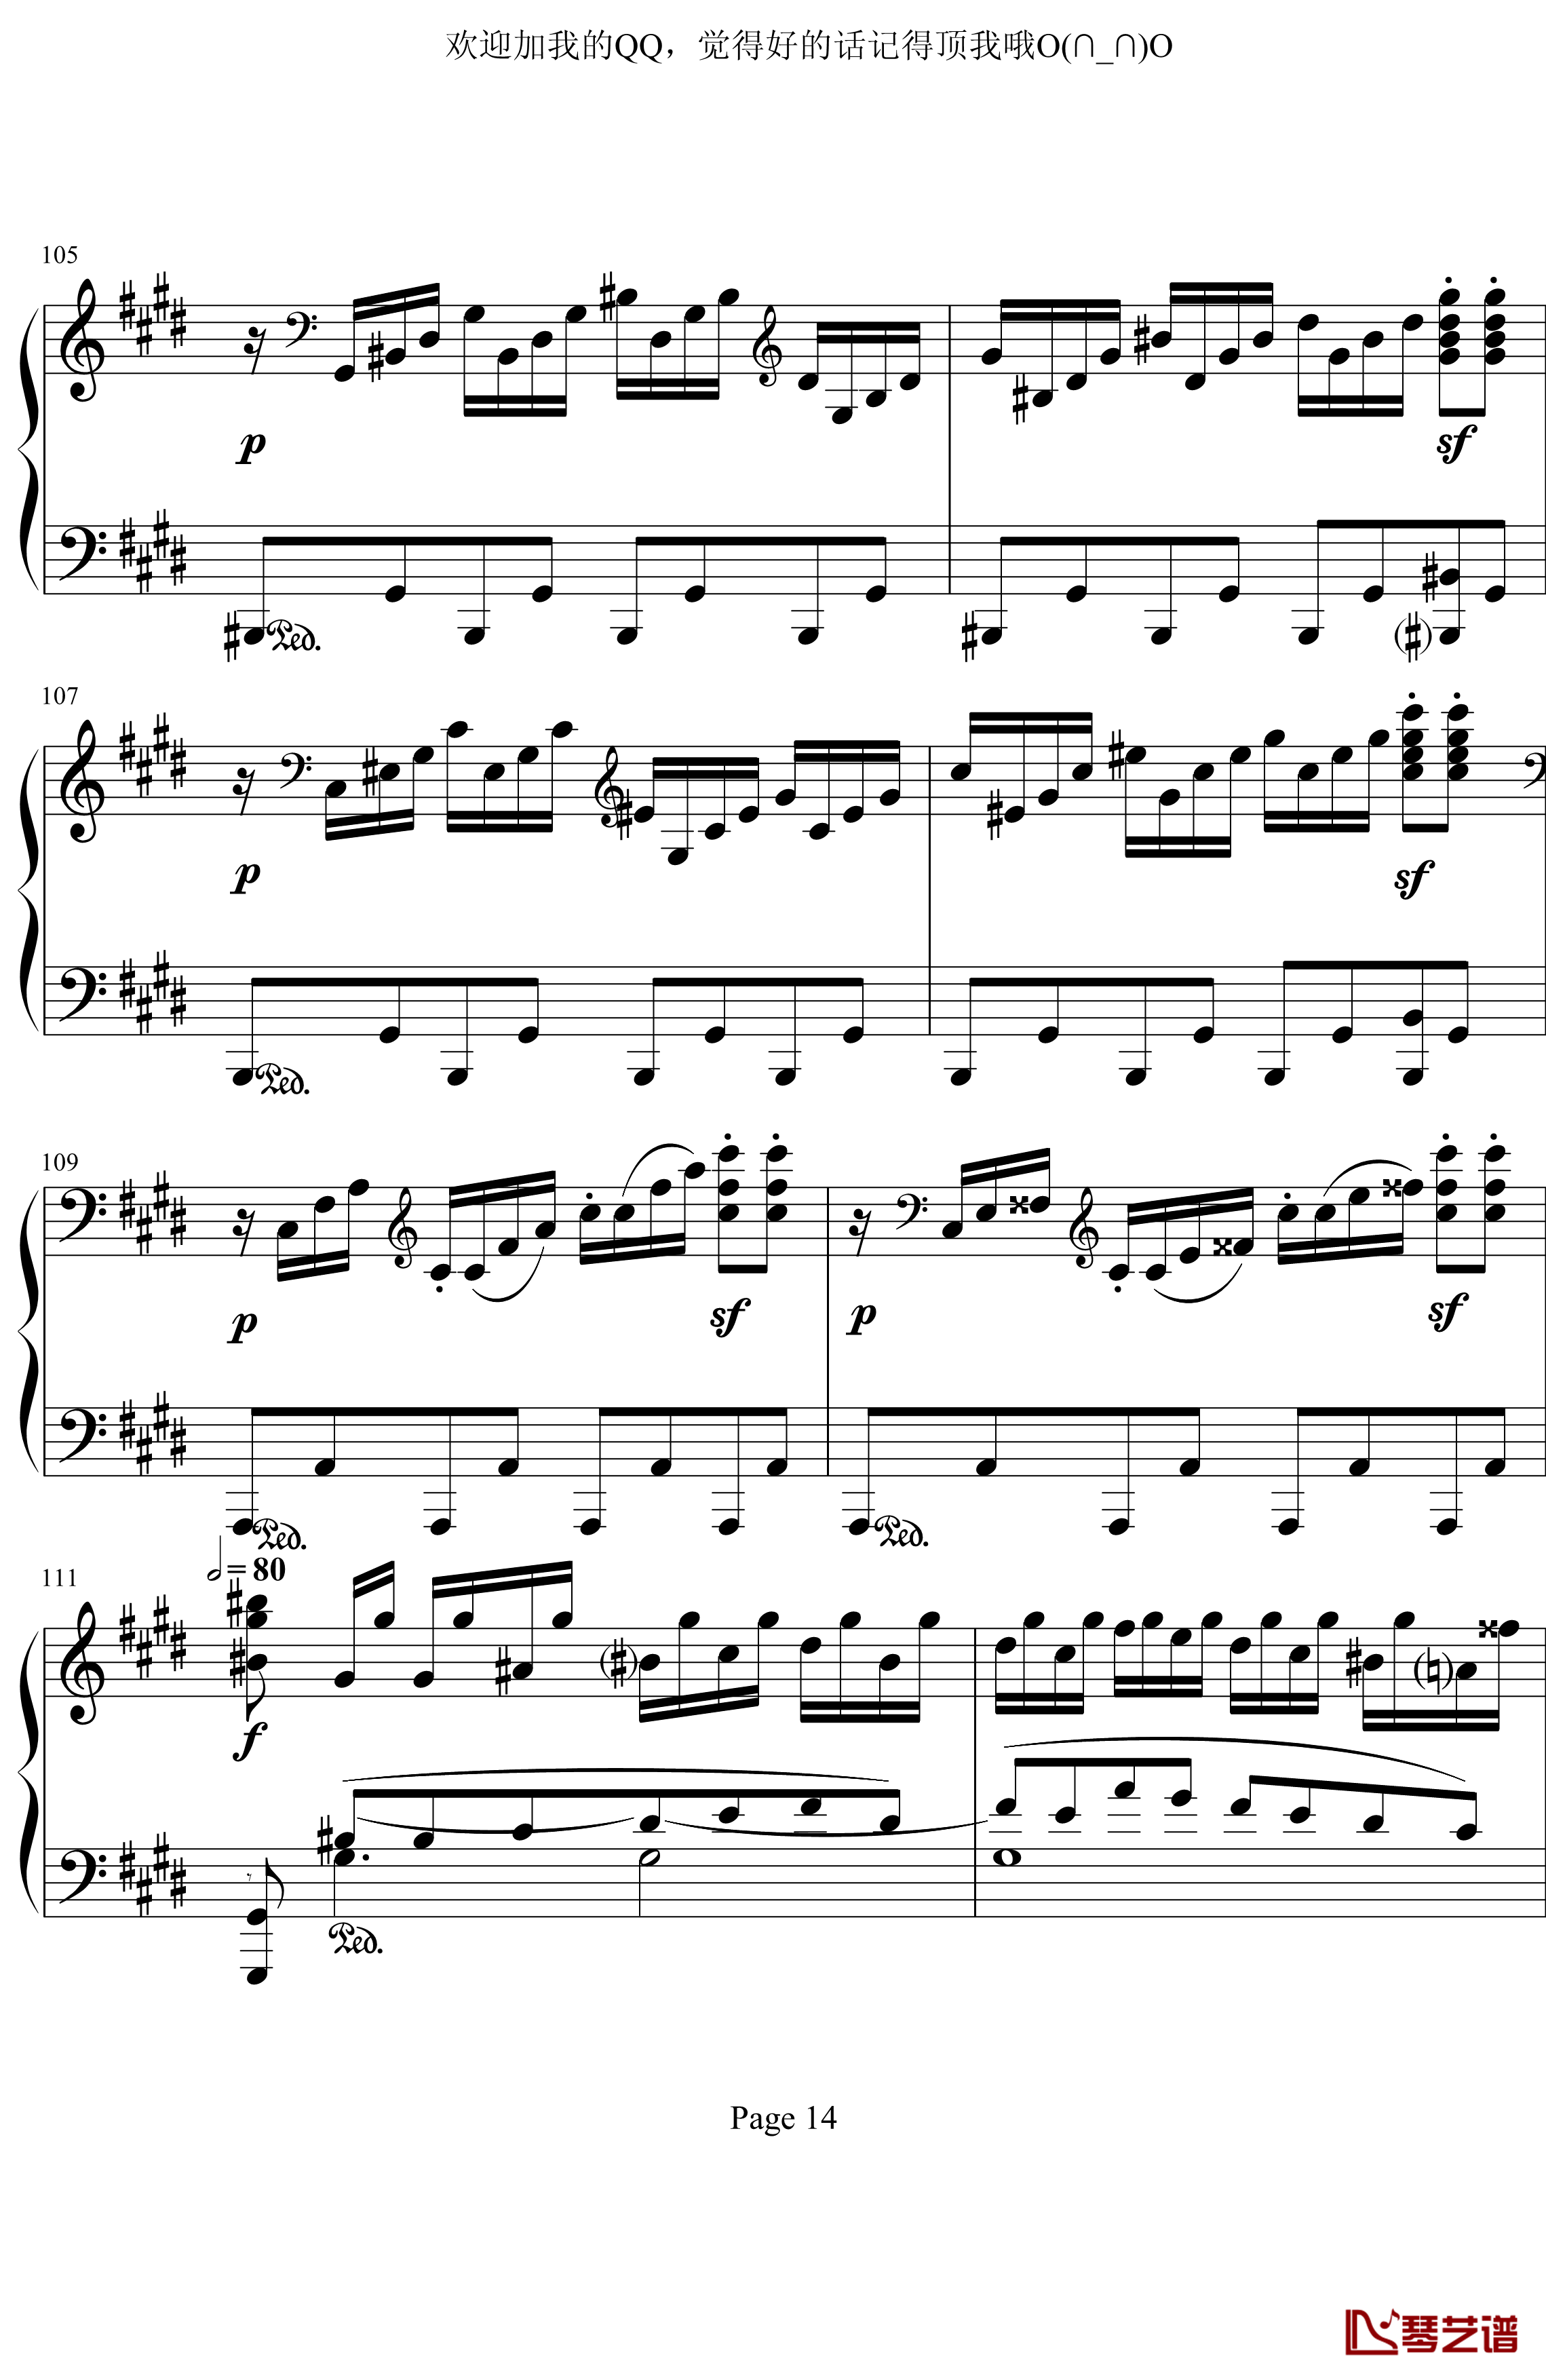 月光奏鸣曲第三乐章钢琴谱-贝多芬-beethoven14